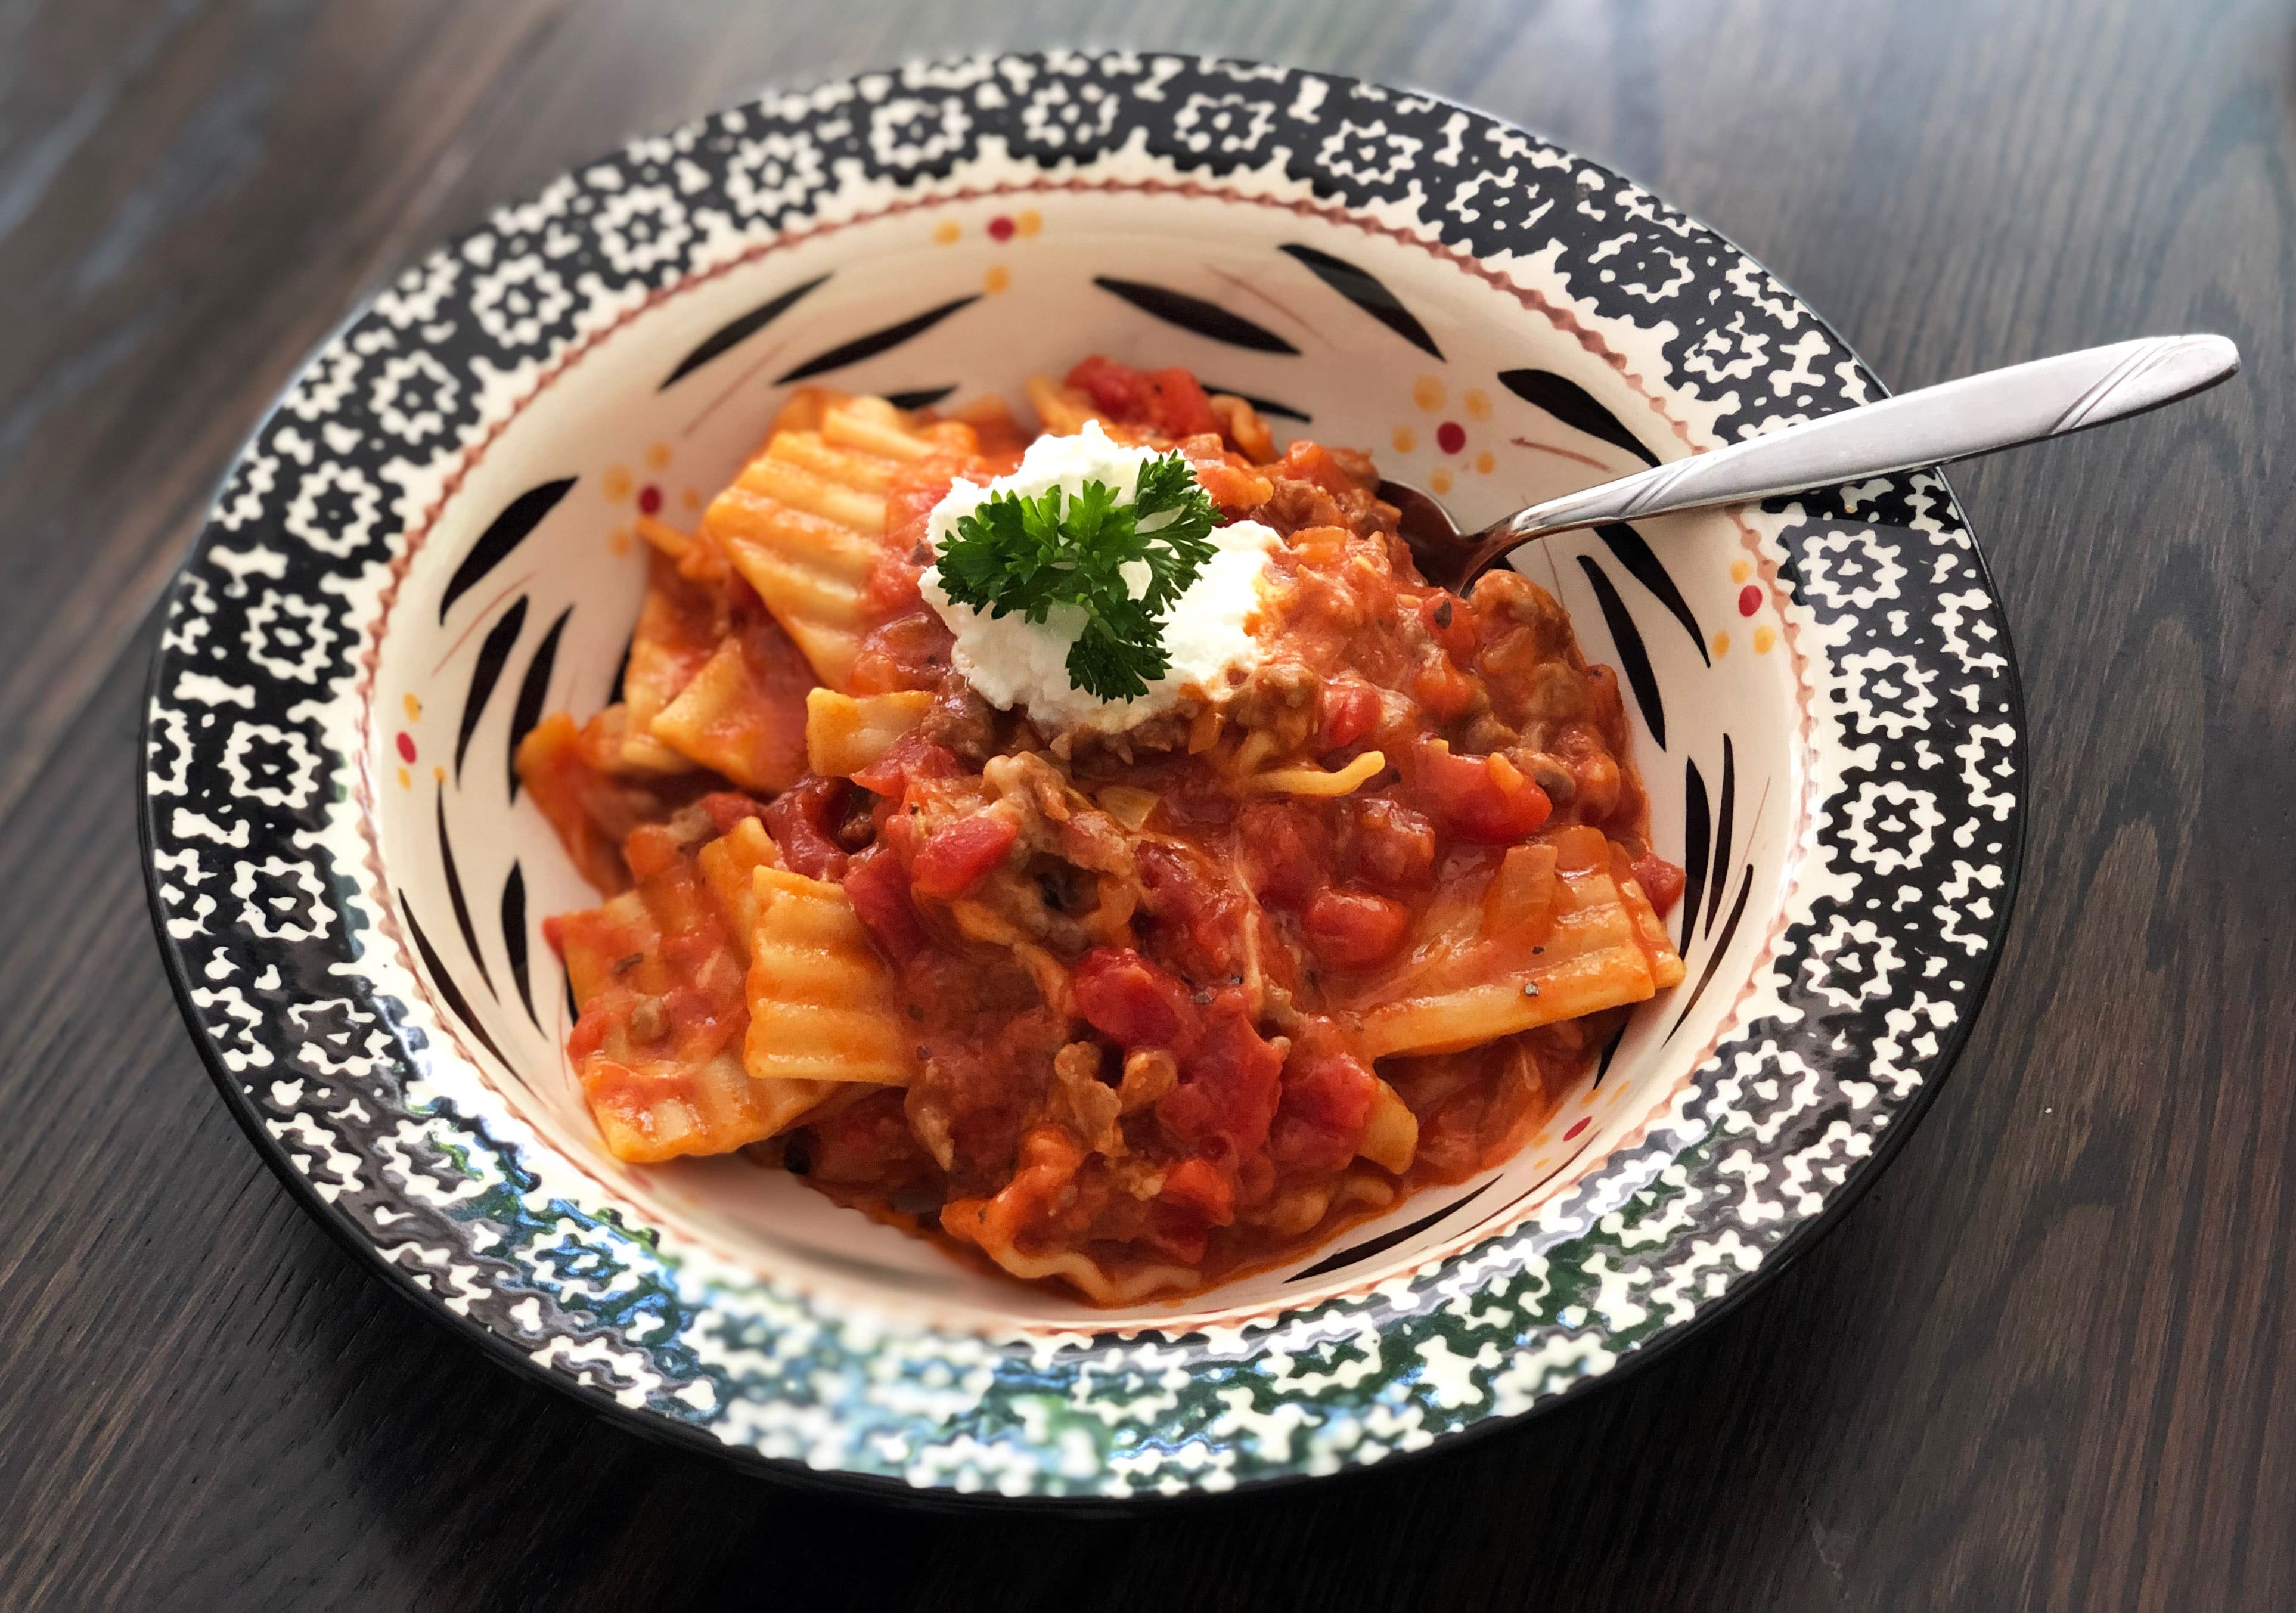 One-Pot Lasagna Soup